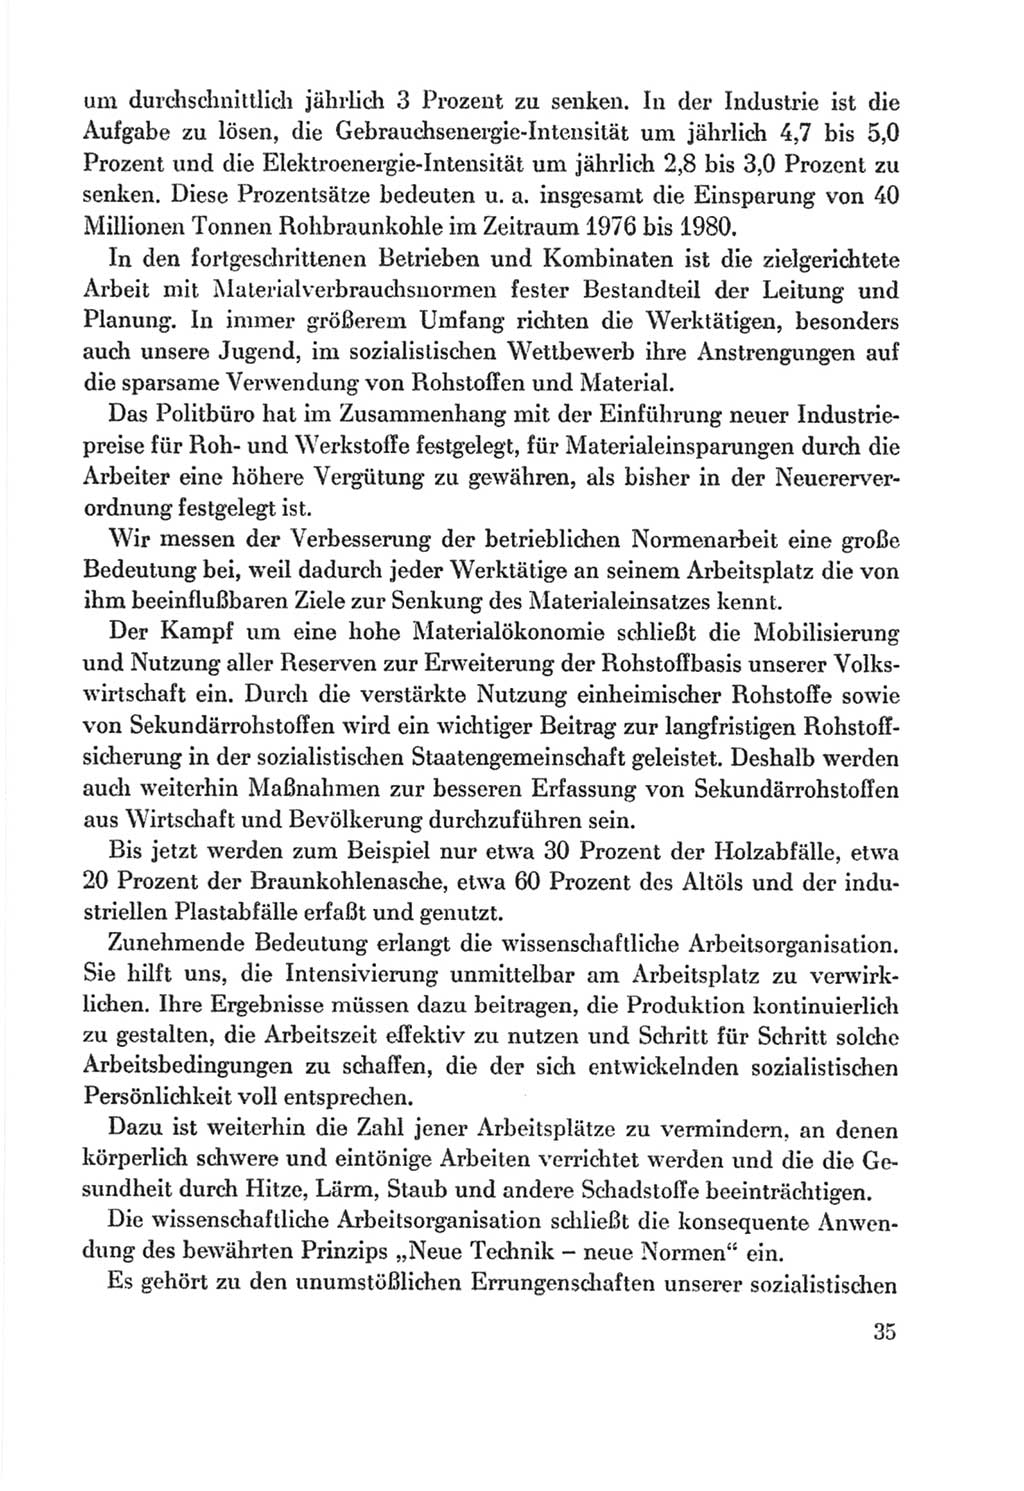 Protokoll der Verhandlungen des Ⅸ. Parteitages der Sozialistischen Einheitspartei Deutschlands (SED) [Deutsche Demokratische Republik (DDR)] 1976, Band 2, Seite 35 (Prot. Verh. Ⅸ. PT SED DDR 1976, Bd. 2, S. 35)